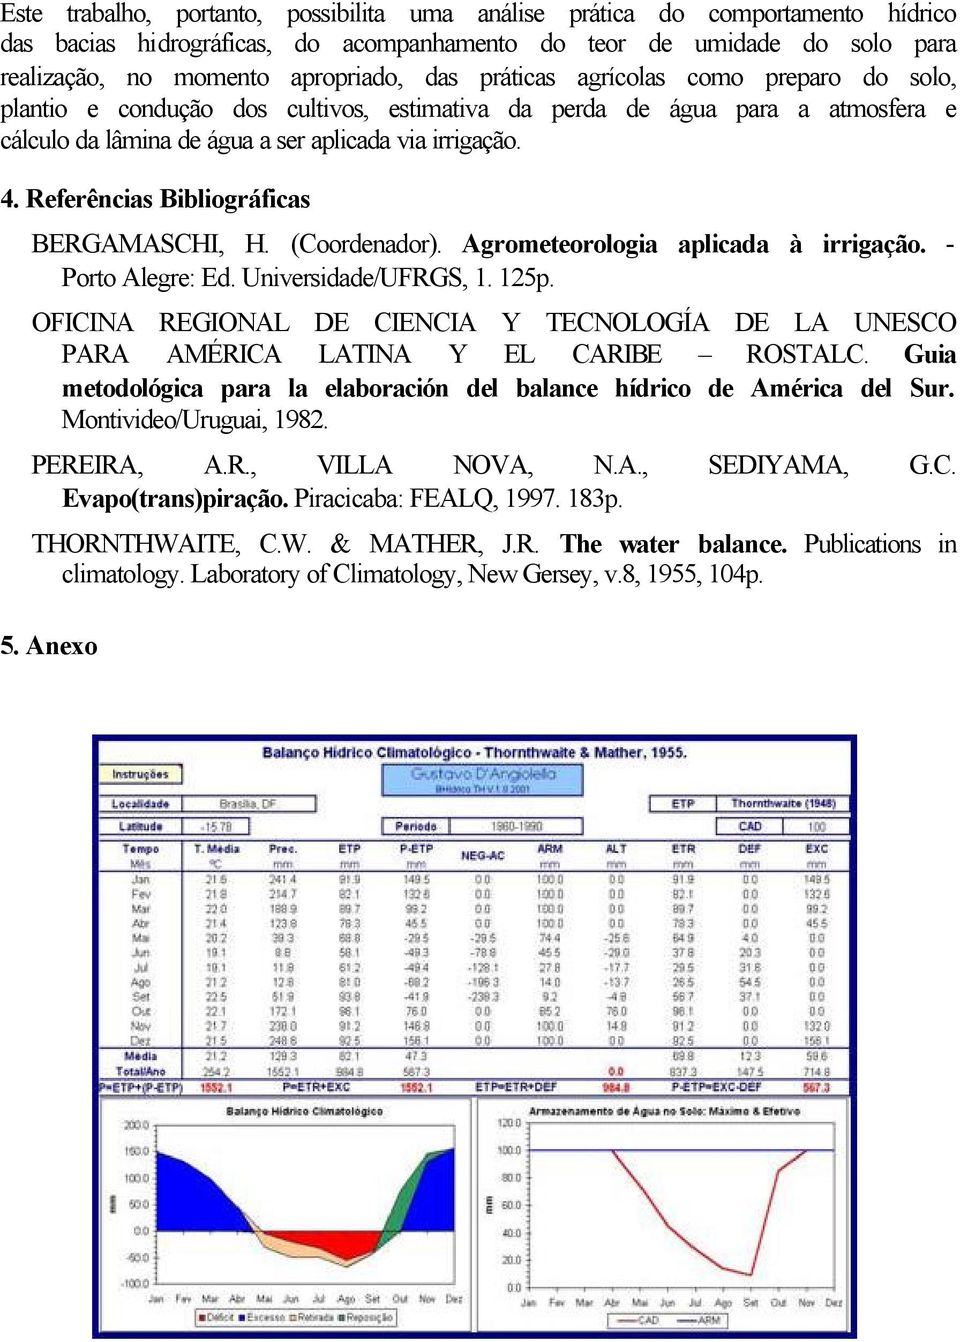 Referências Bibliográficas BERGAMASCHI, H. (Coordenador). Agrometeorologia aplicada à irrigação. - Porto Alegre: Ed. Universidade/UFRGS, 1. 125p.